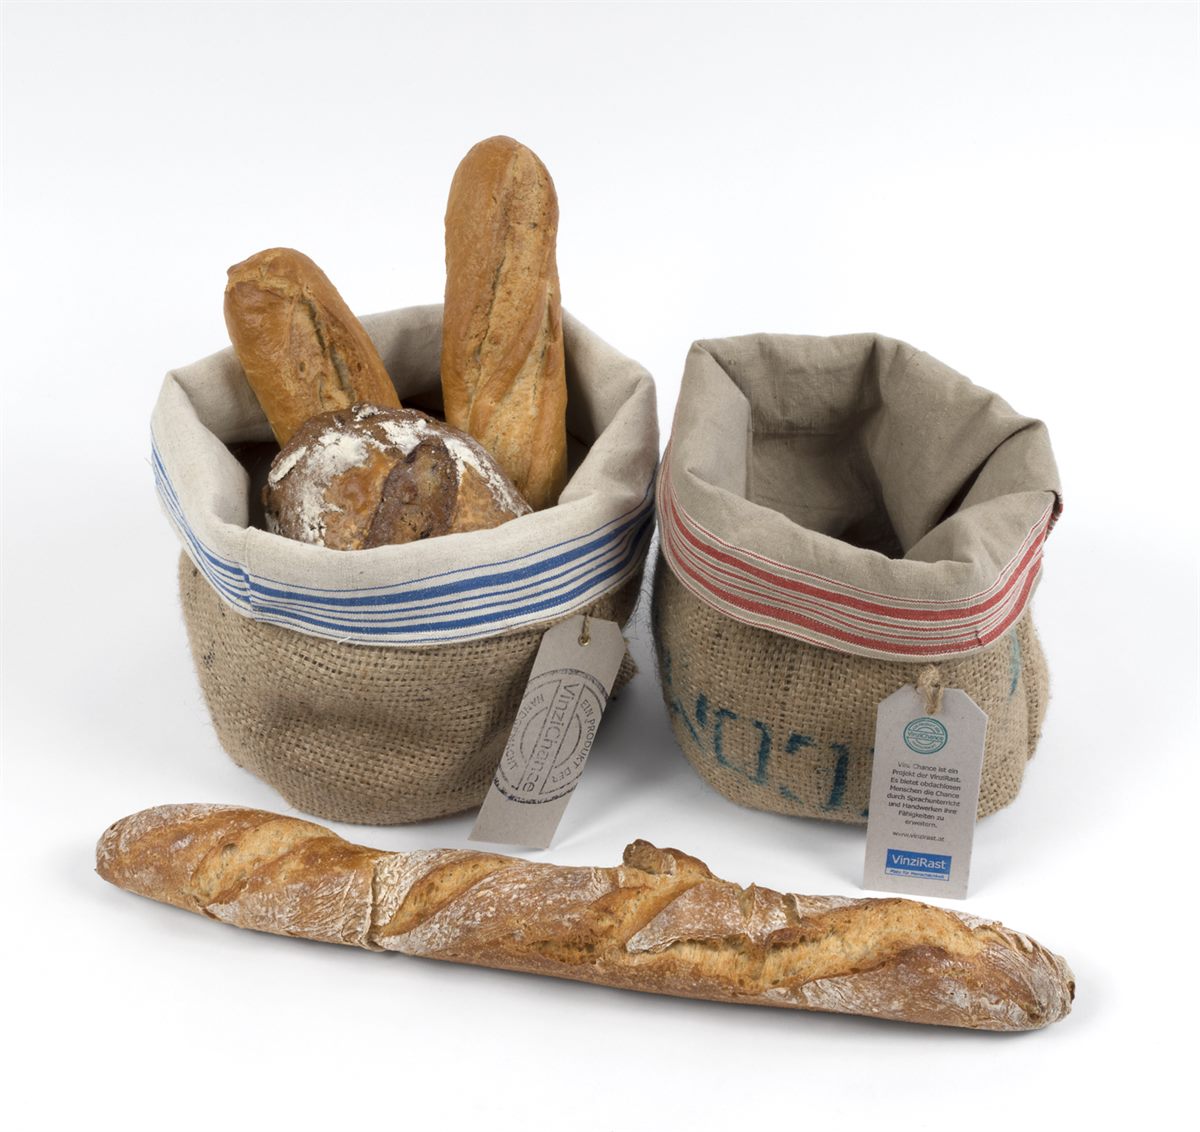 Jute-Brotkörbe mit Leinen-Inlet - jedes Stück ein Unikat, hergestellt von obdachlosen Menschen im Rahmen des Projektes VinziChance